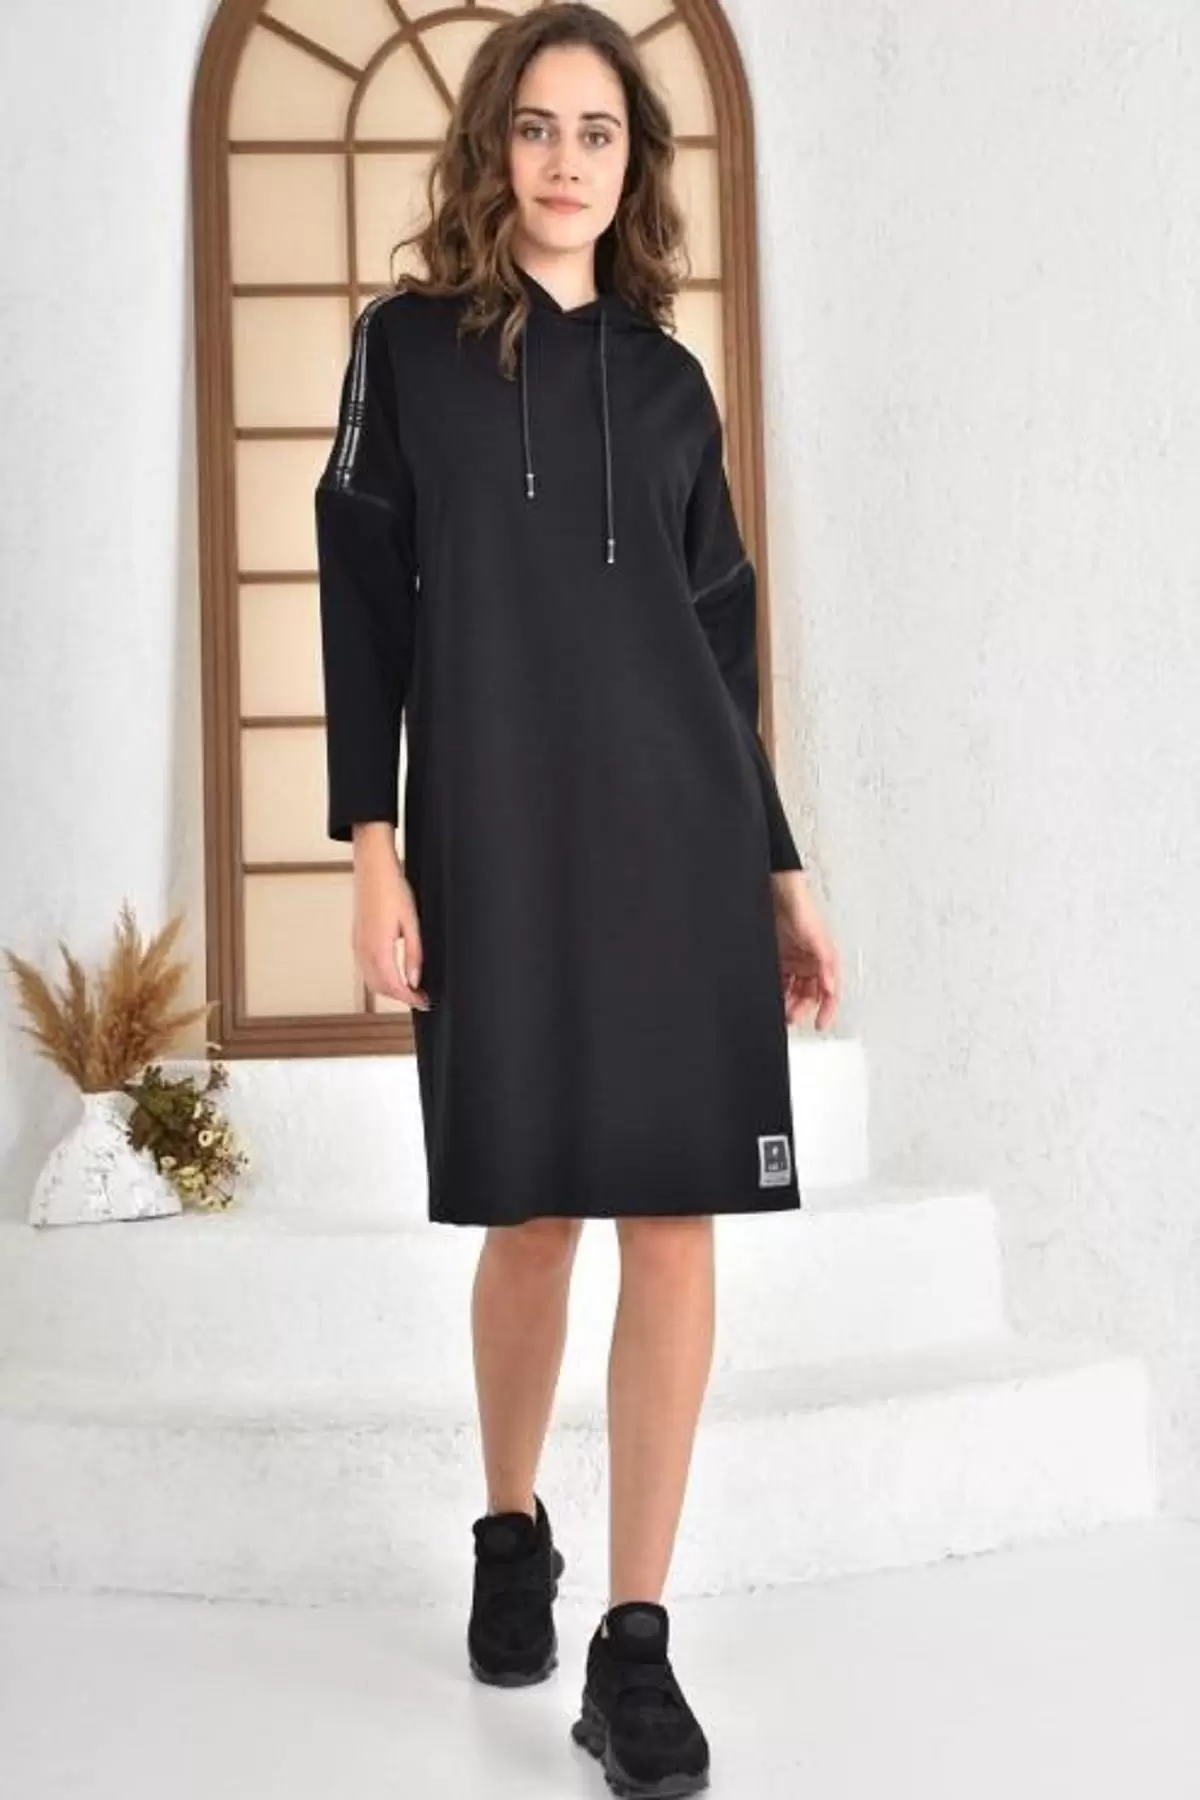 Kapüşonlu Koldan Fermuarlı Omuzdan Şeritli Cepli Siyah Kadın Elbise